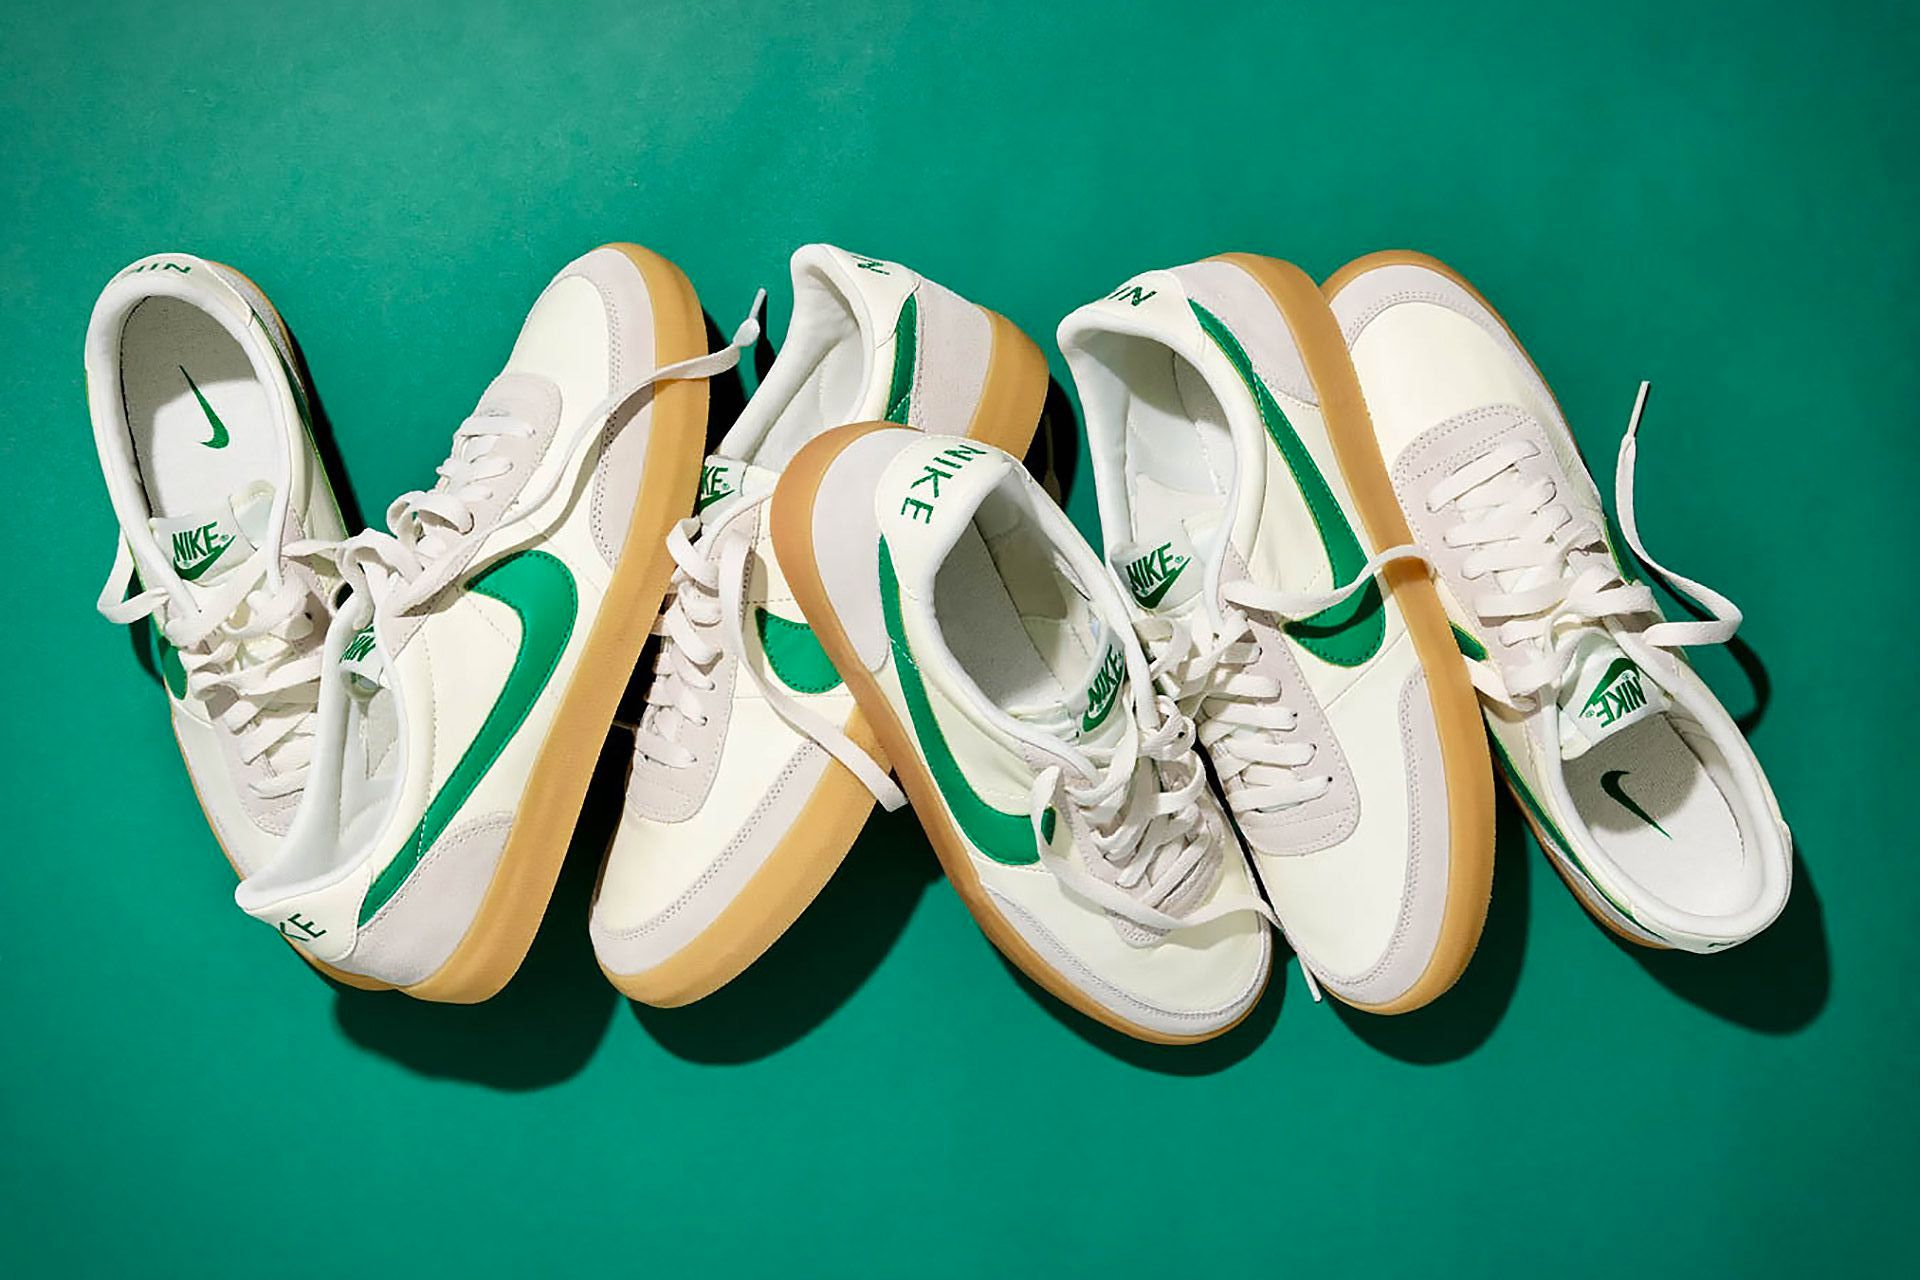 Así las nuevas zapatillas deportivas Killshot 2 de Nike y J. Crew... ¡en verde!